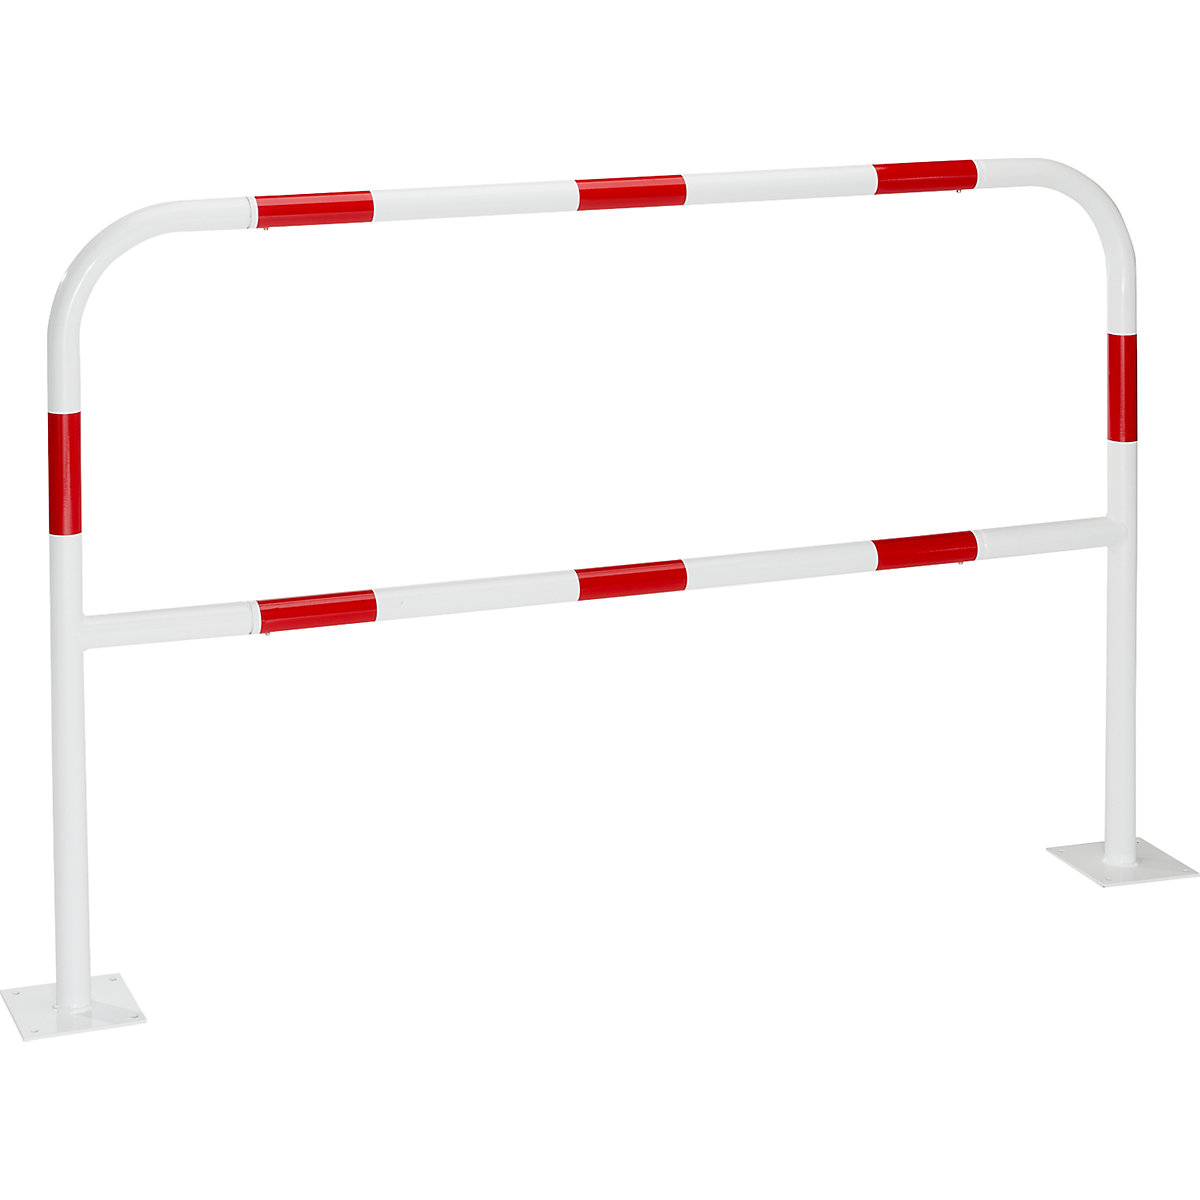 Arco de segurança para zonas de perigo, para fixar por buchas, vermelho / branco, largura 1500 mm-16